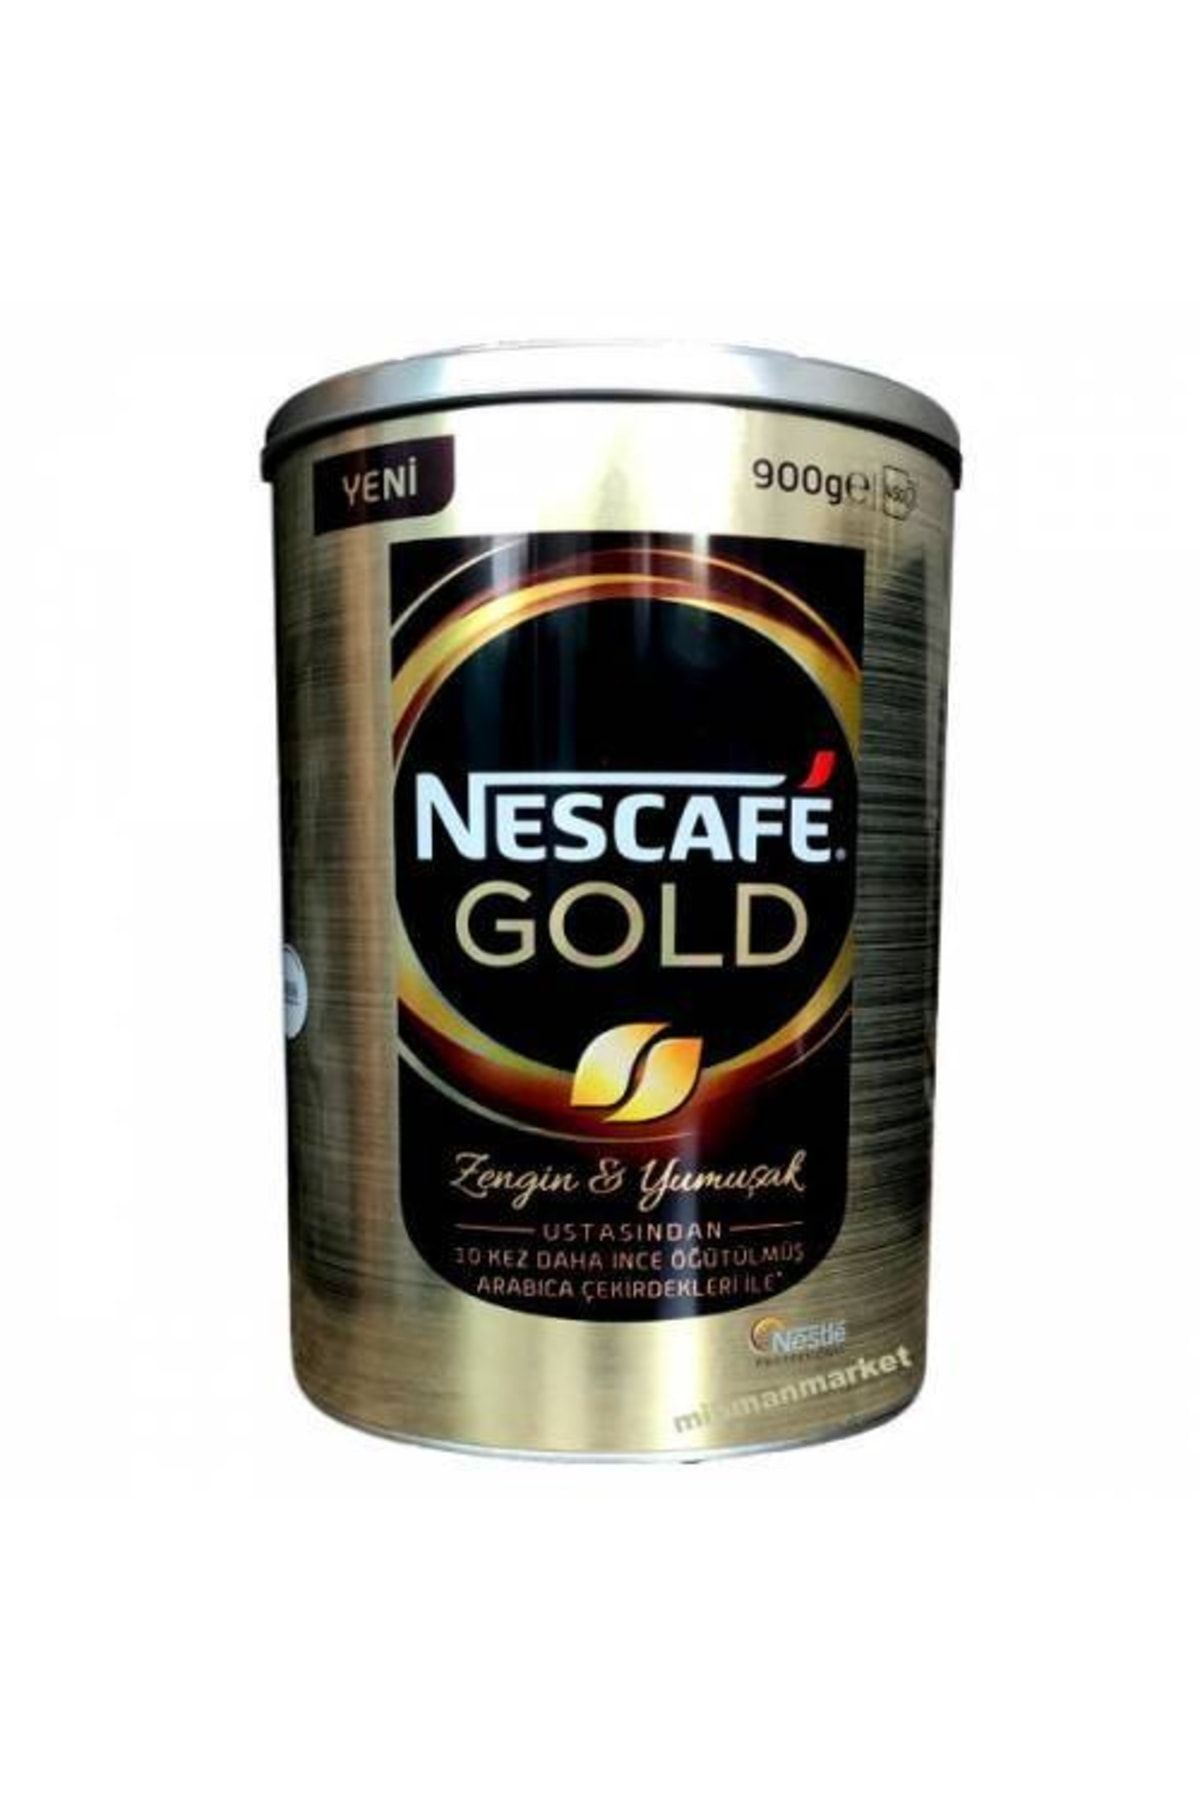 Nescafe gold растворимый 900. Кофе Нескафе Голд 900 гр. Нестле Голд кофе. Кофе Nescafe 900 грамм. Нескафе Голд Нестле Профешнл 900 гр.